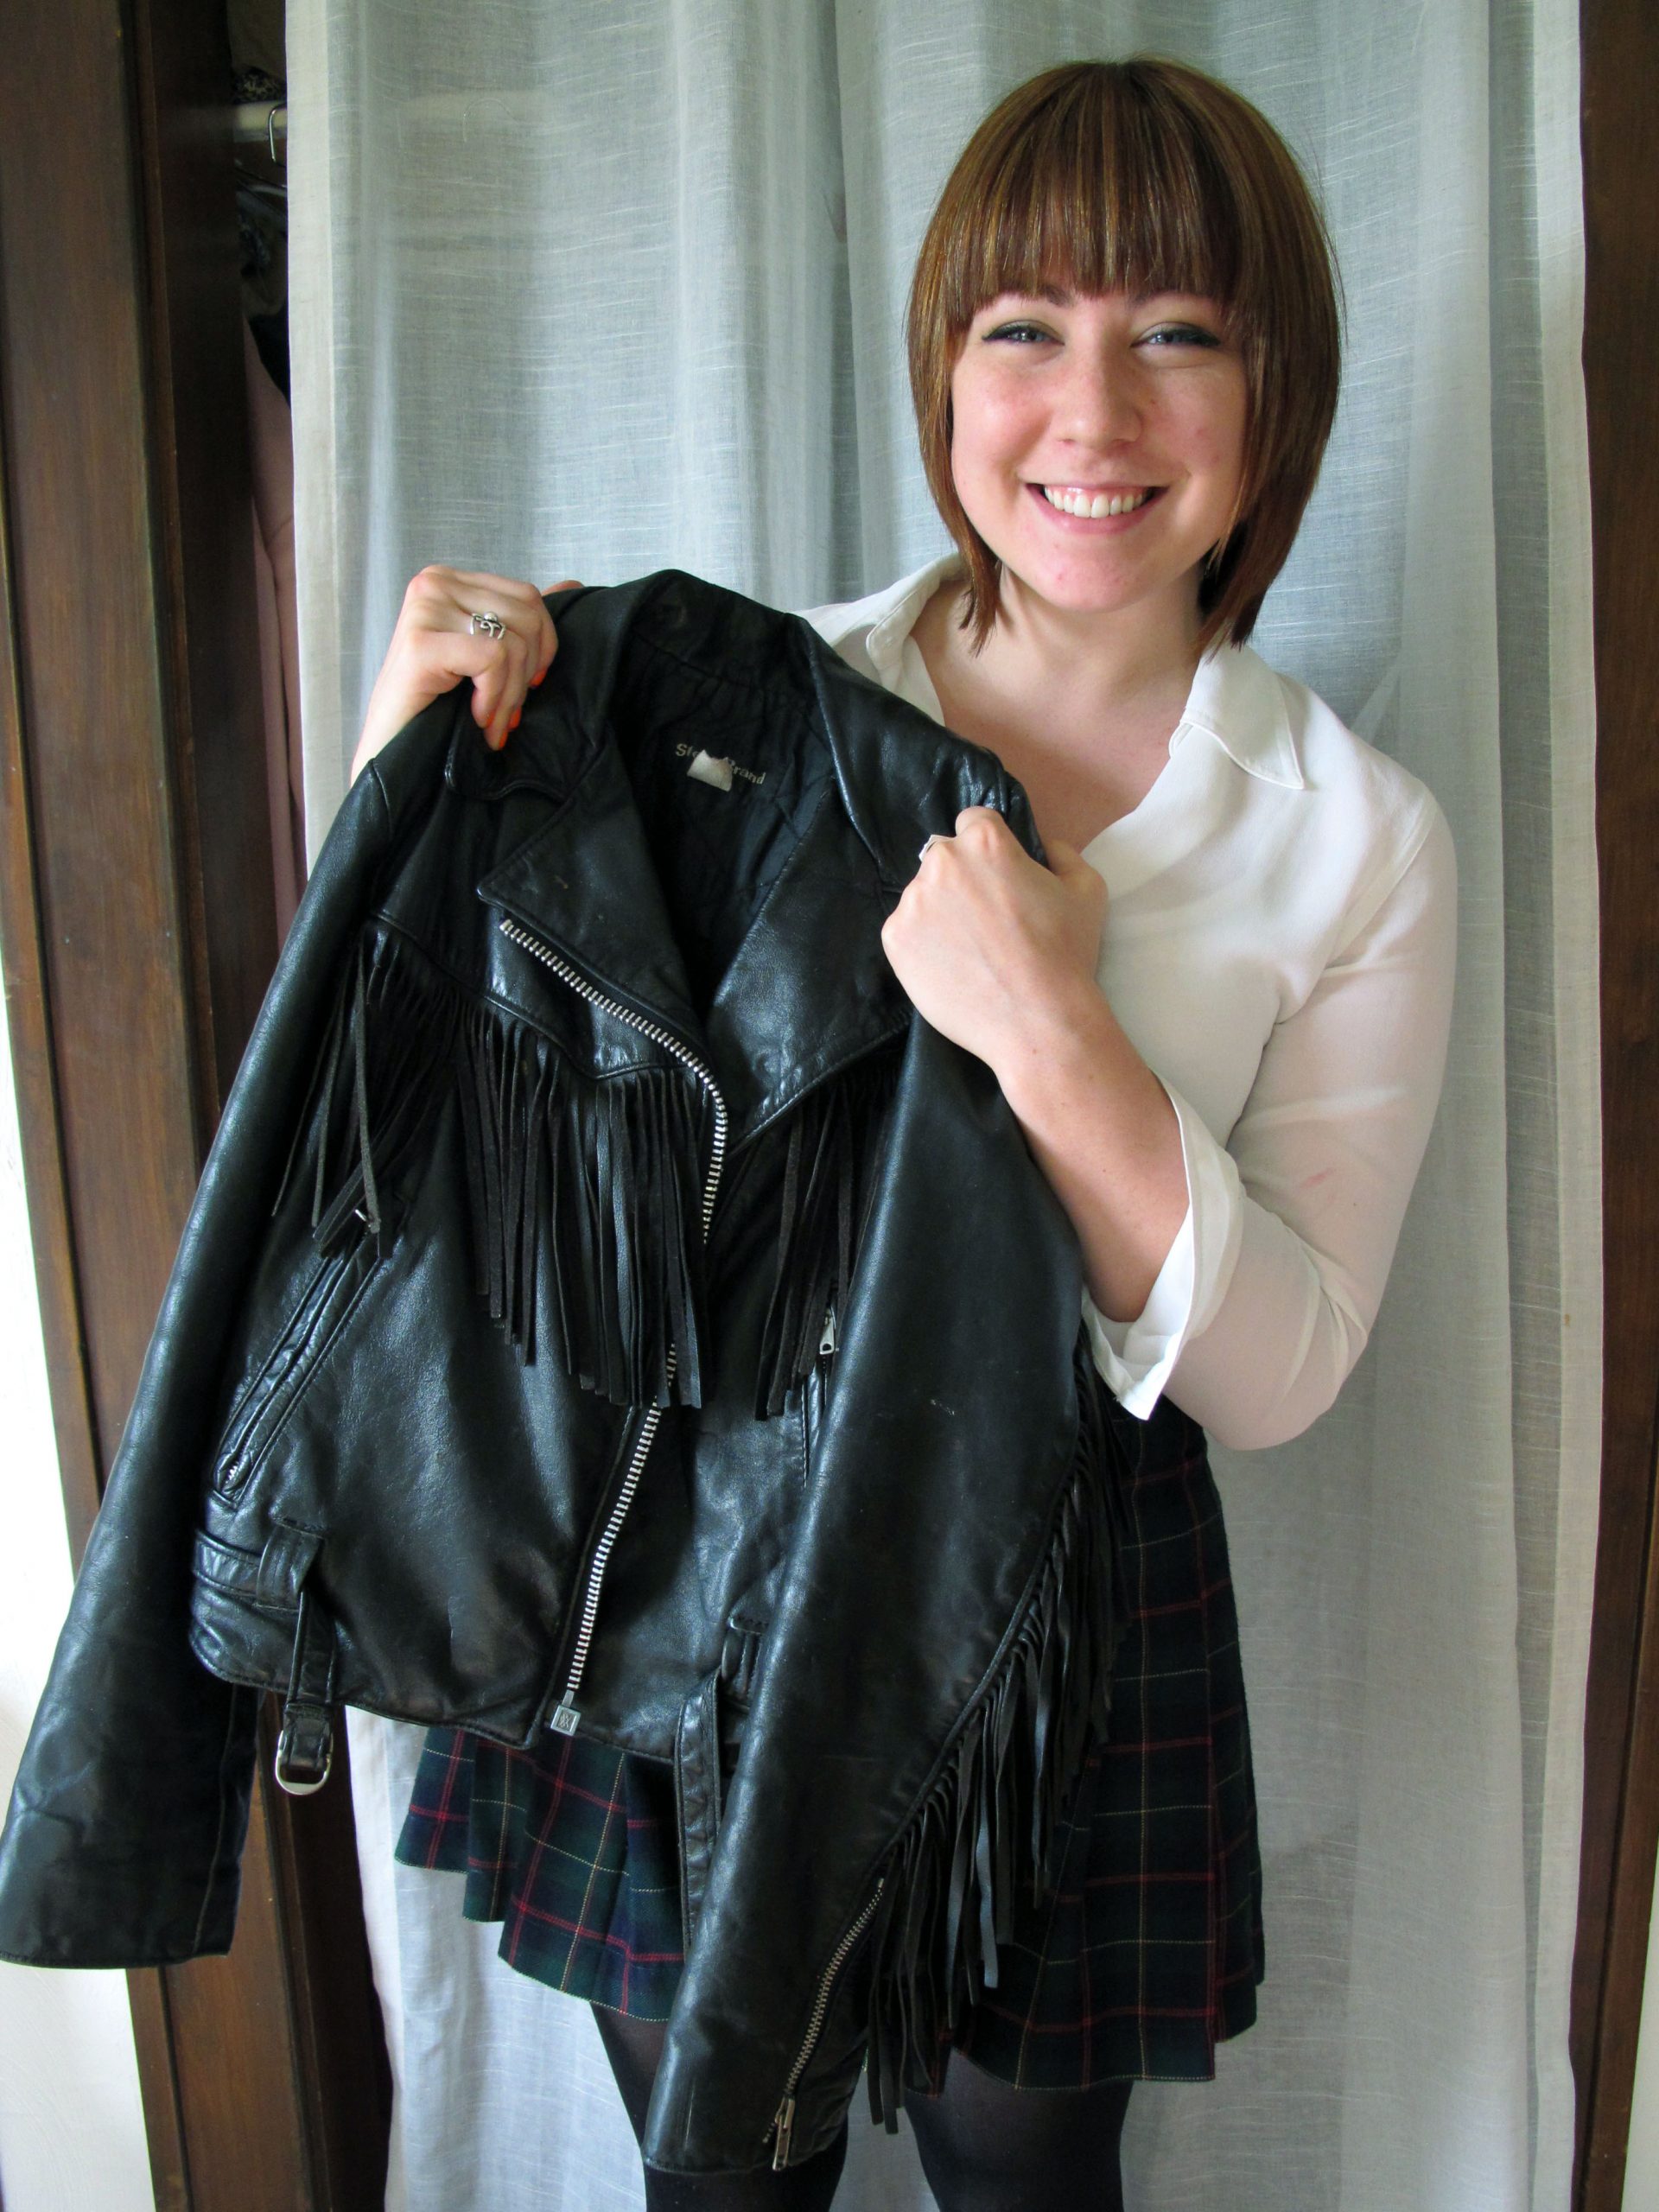 Devon Spitler shows off a jacket that she designed